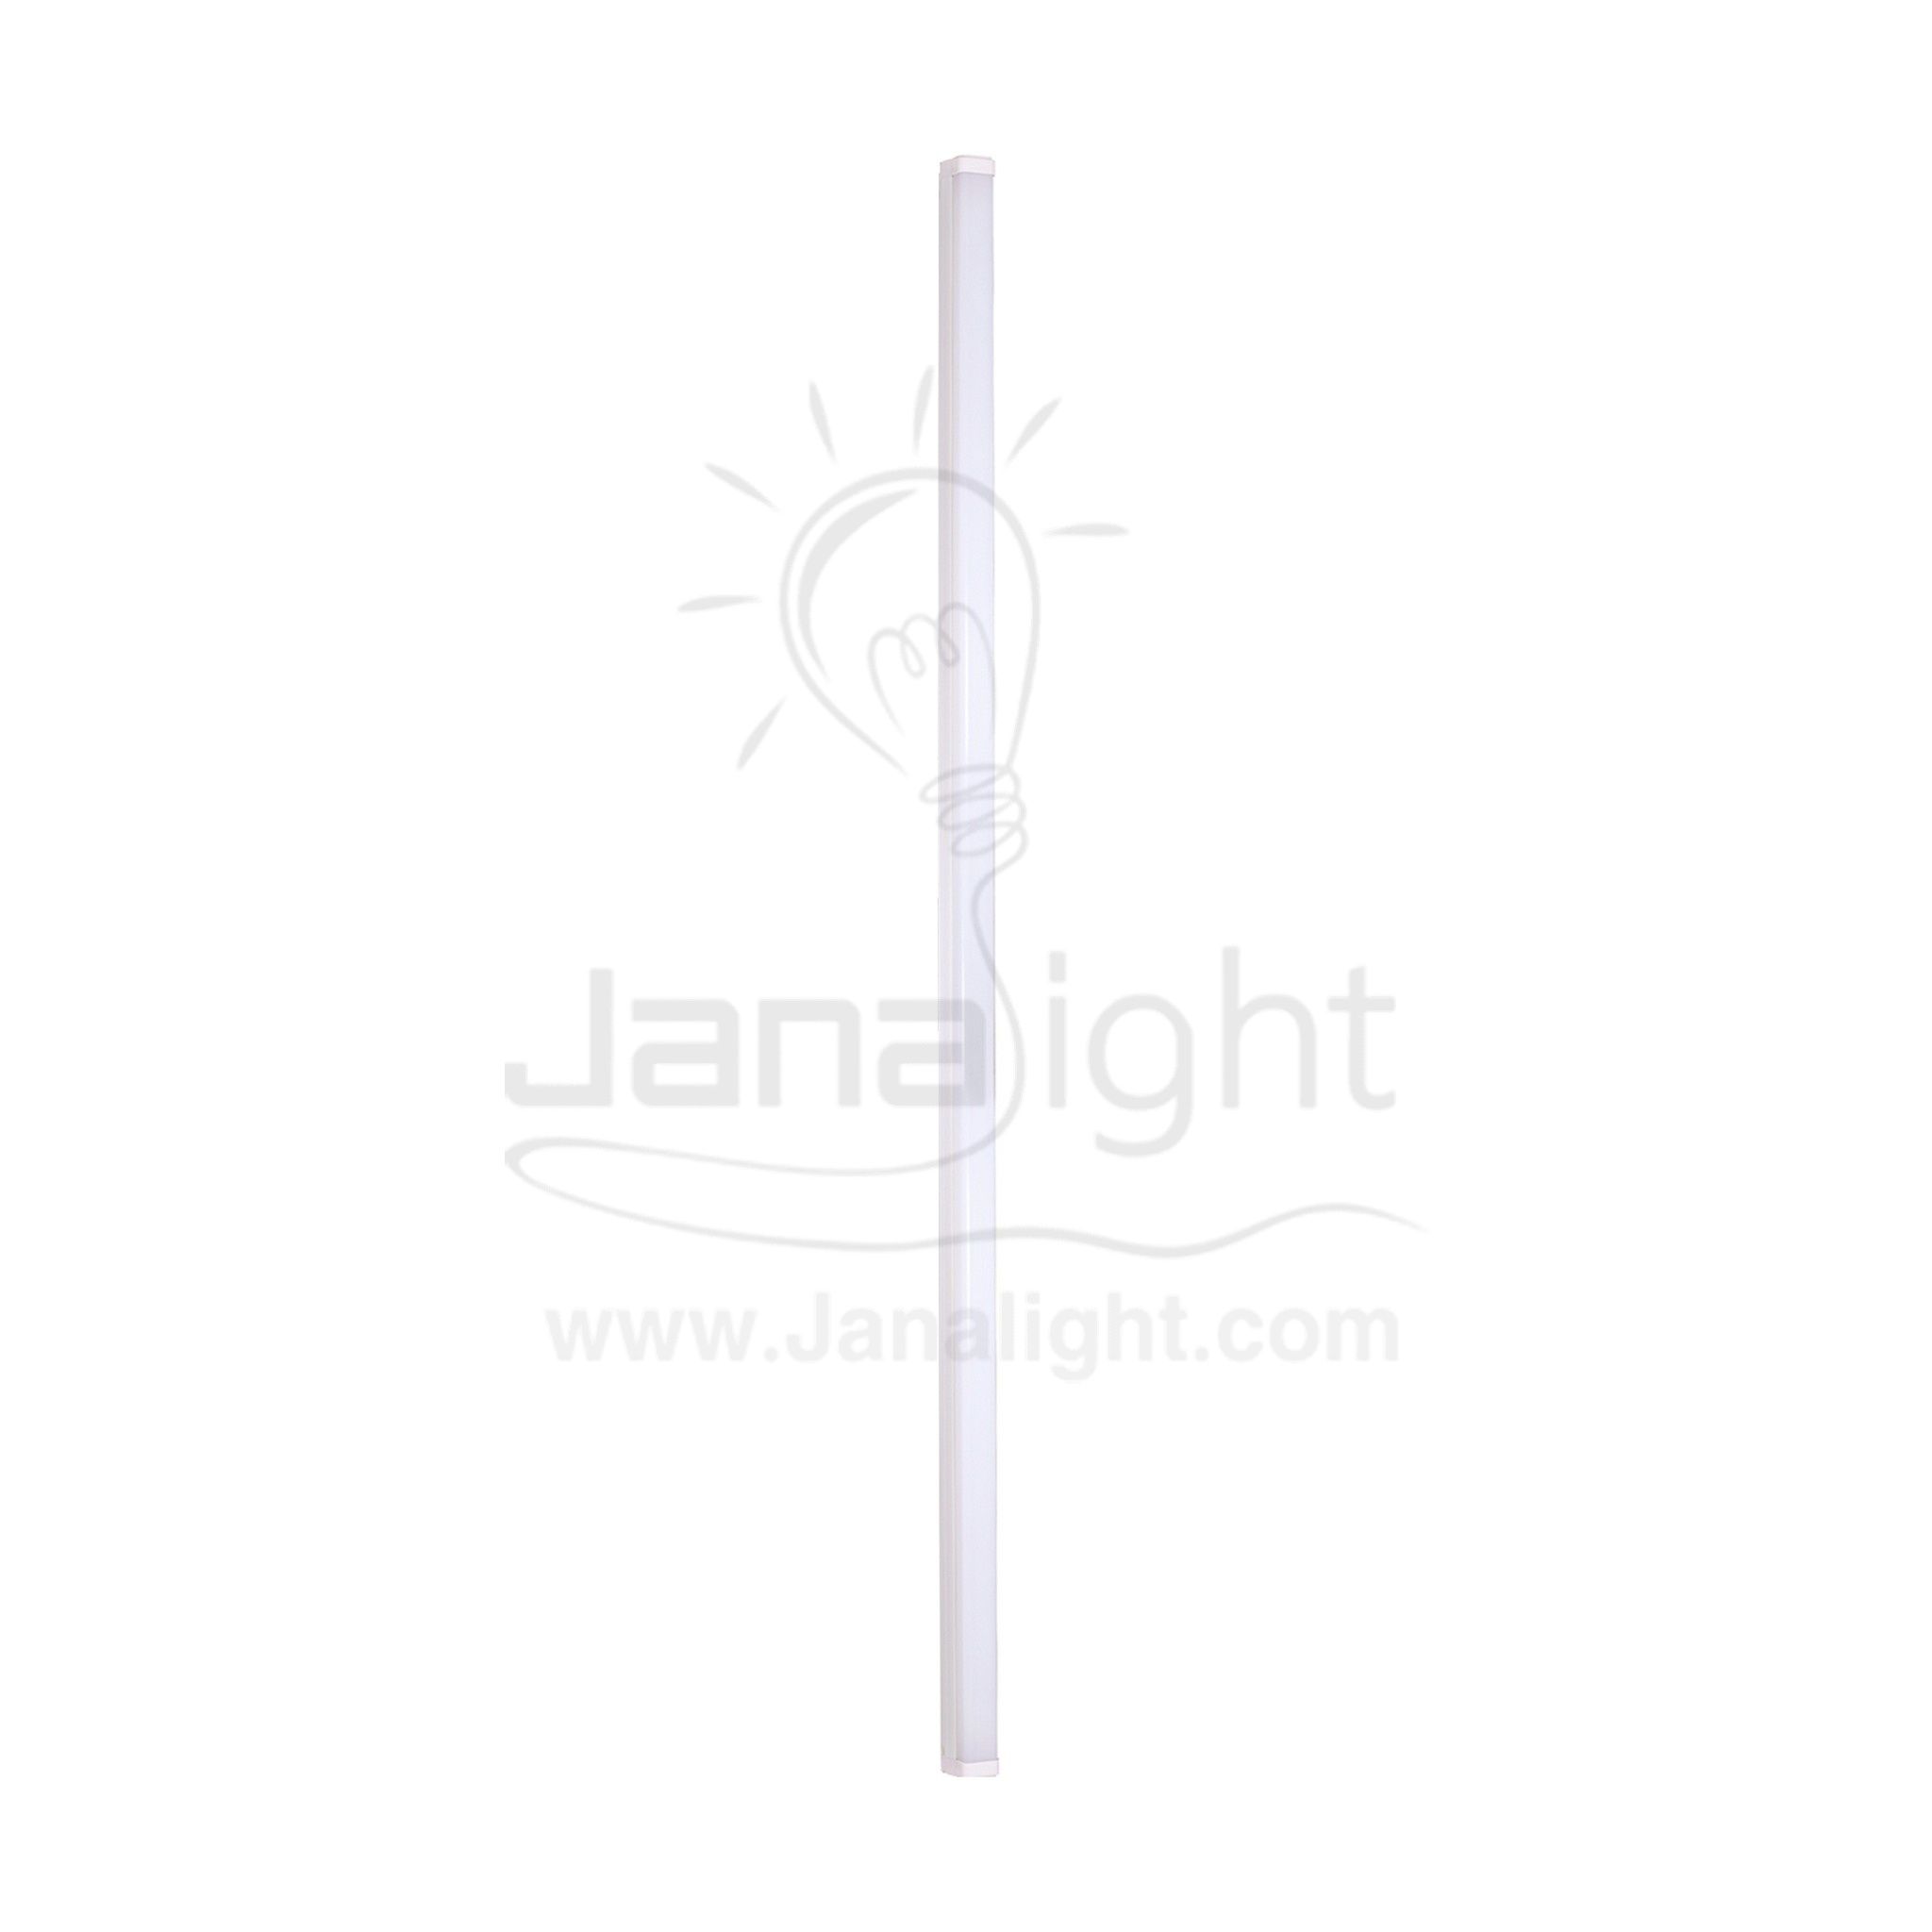 كشاف لد تي ايت 120 سم 23 وات ابيض T8 T8 led lamp rectangle tube light 120cm 23w white 10322052(1)